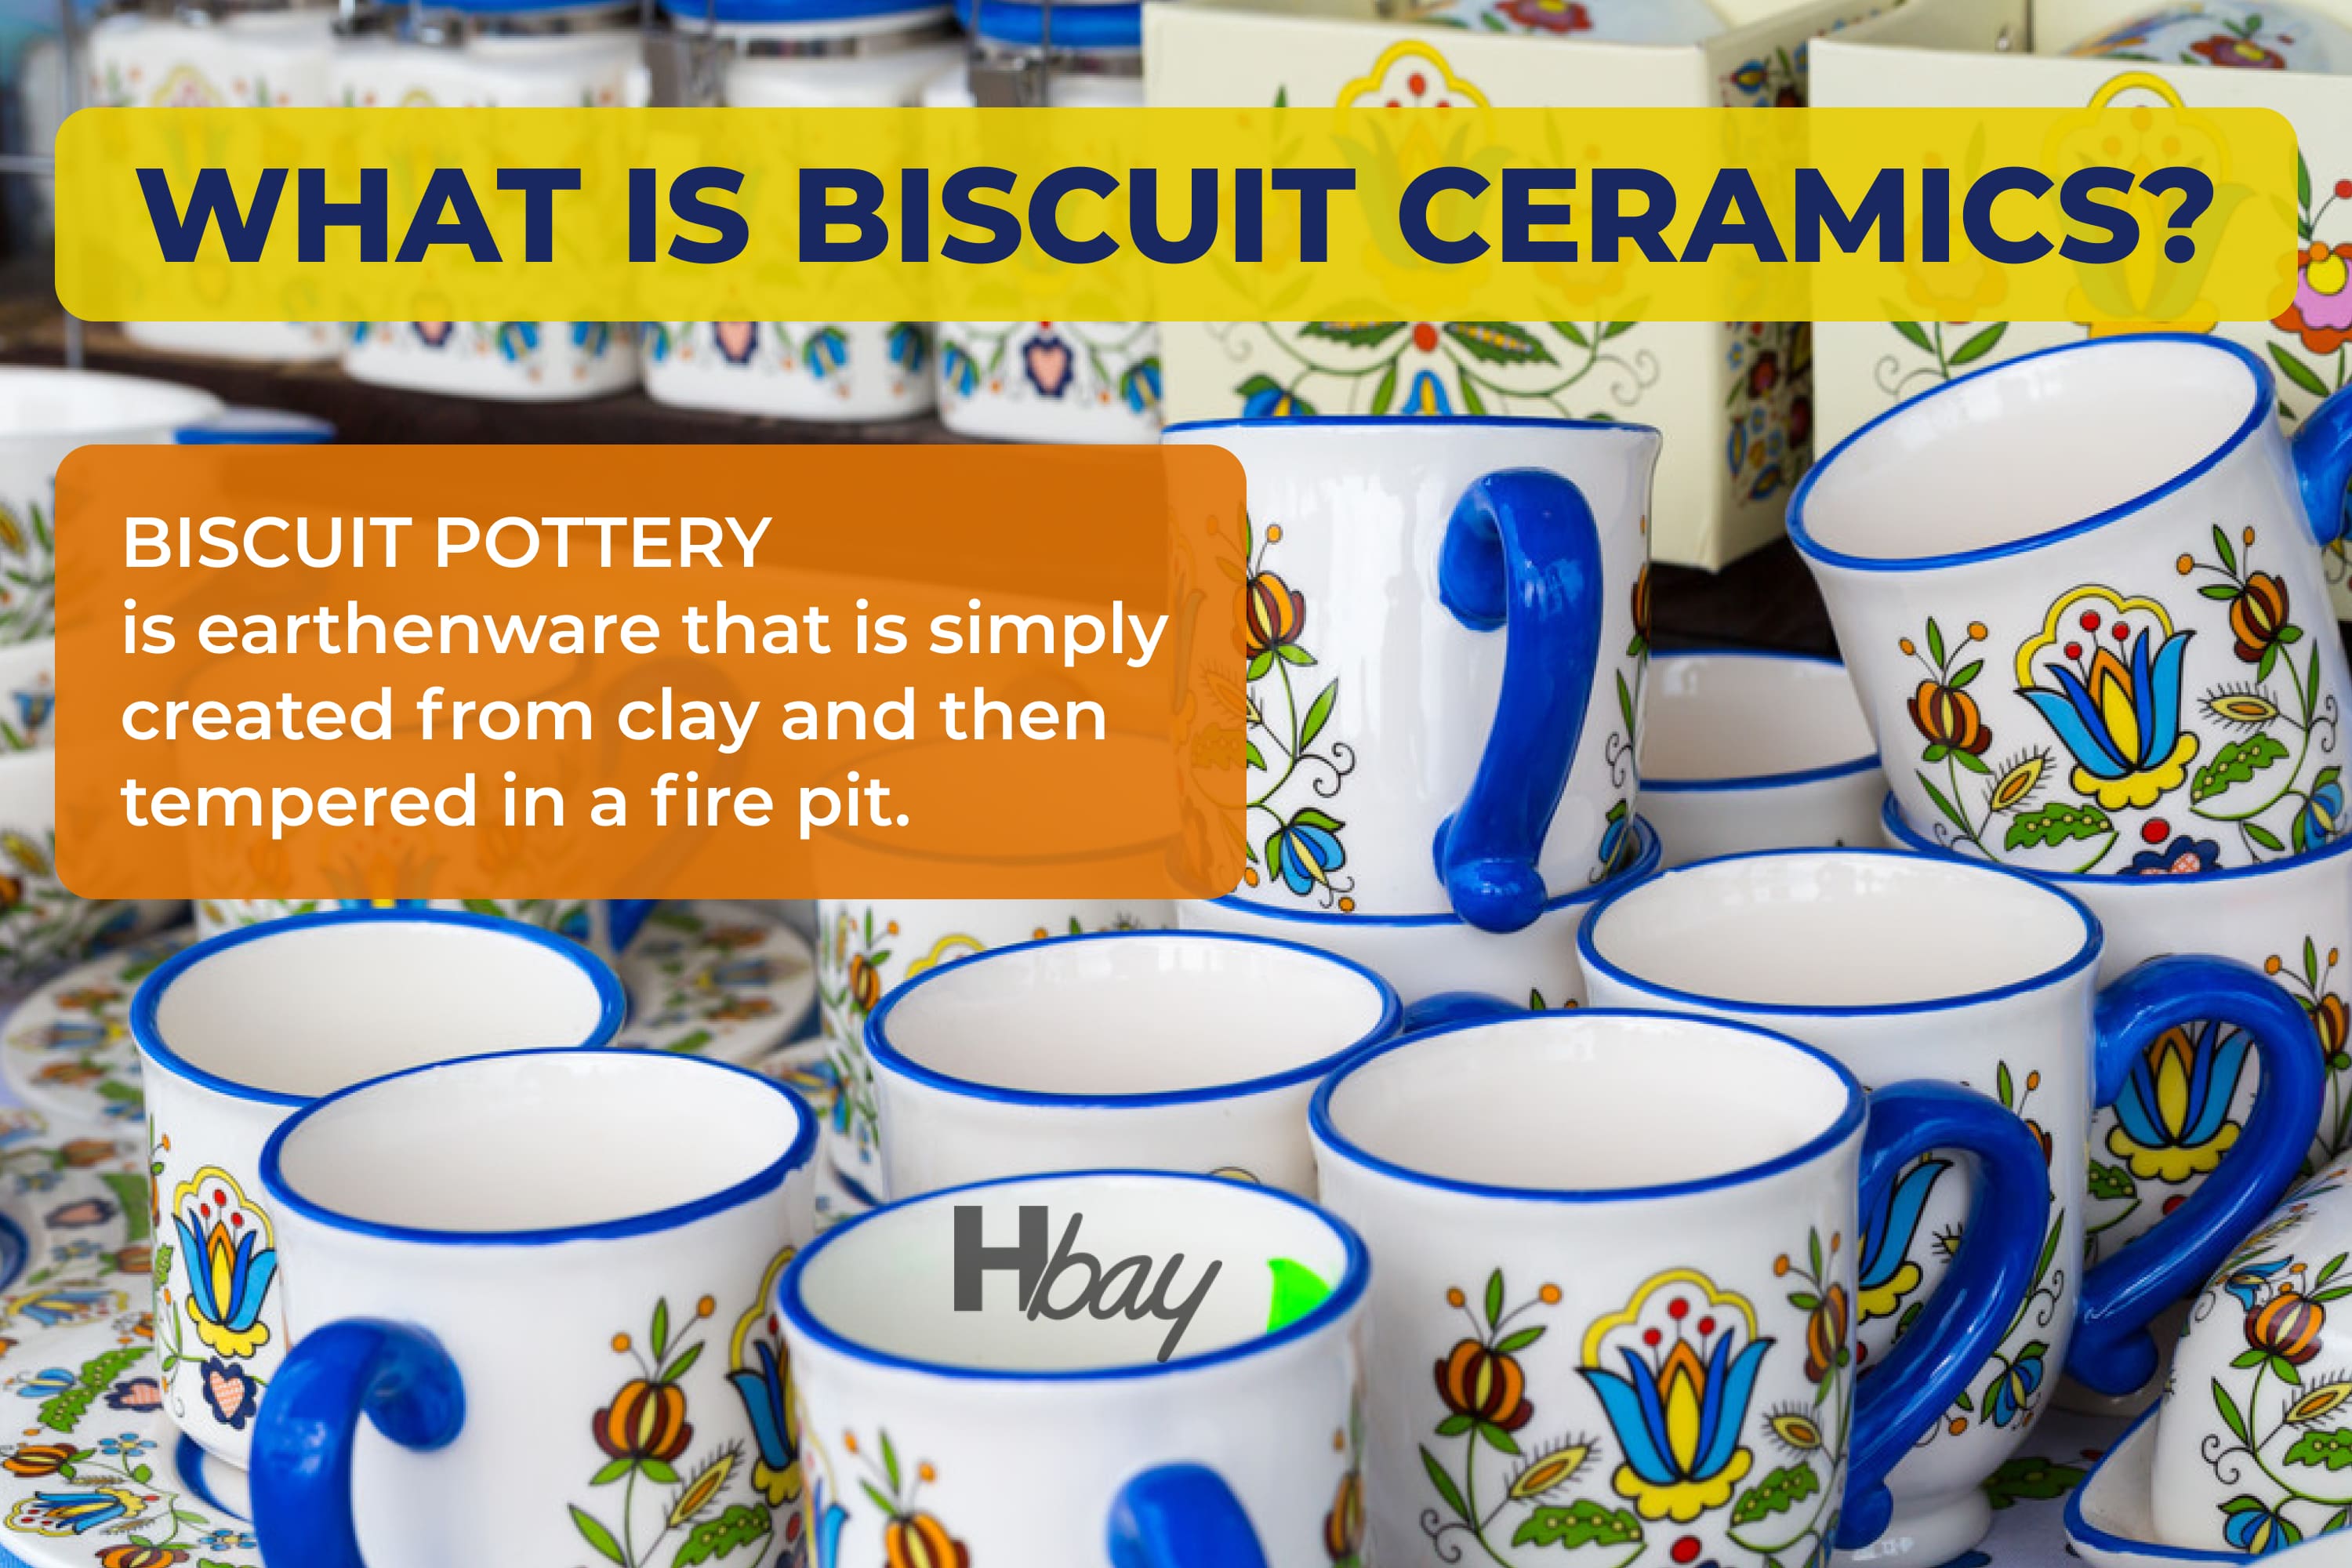 What is biscuit ceramics